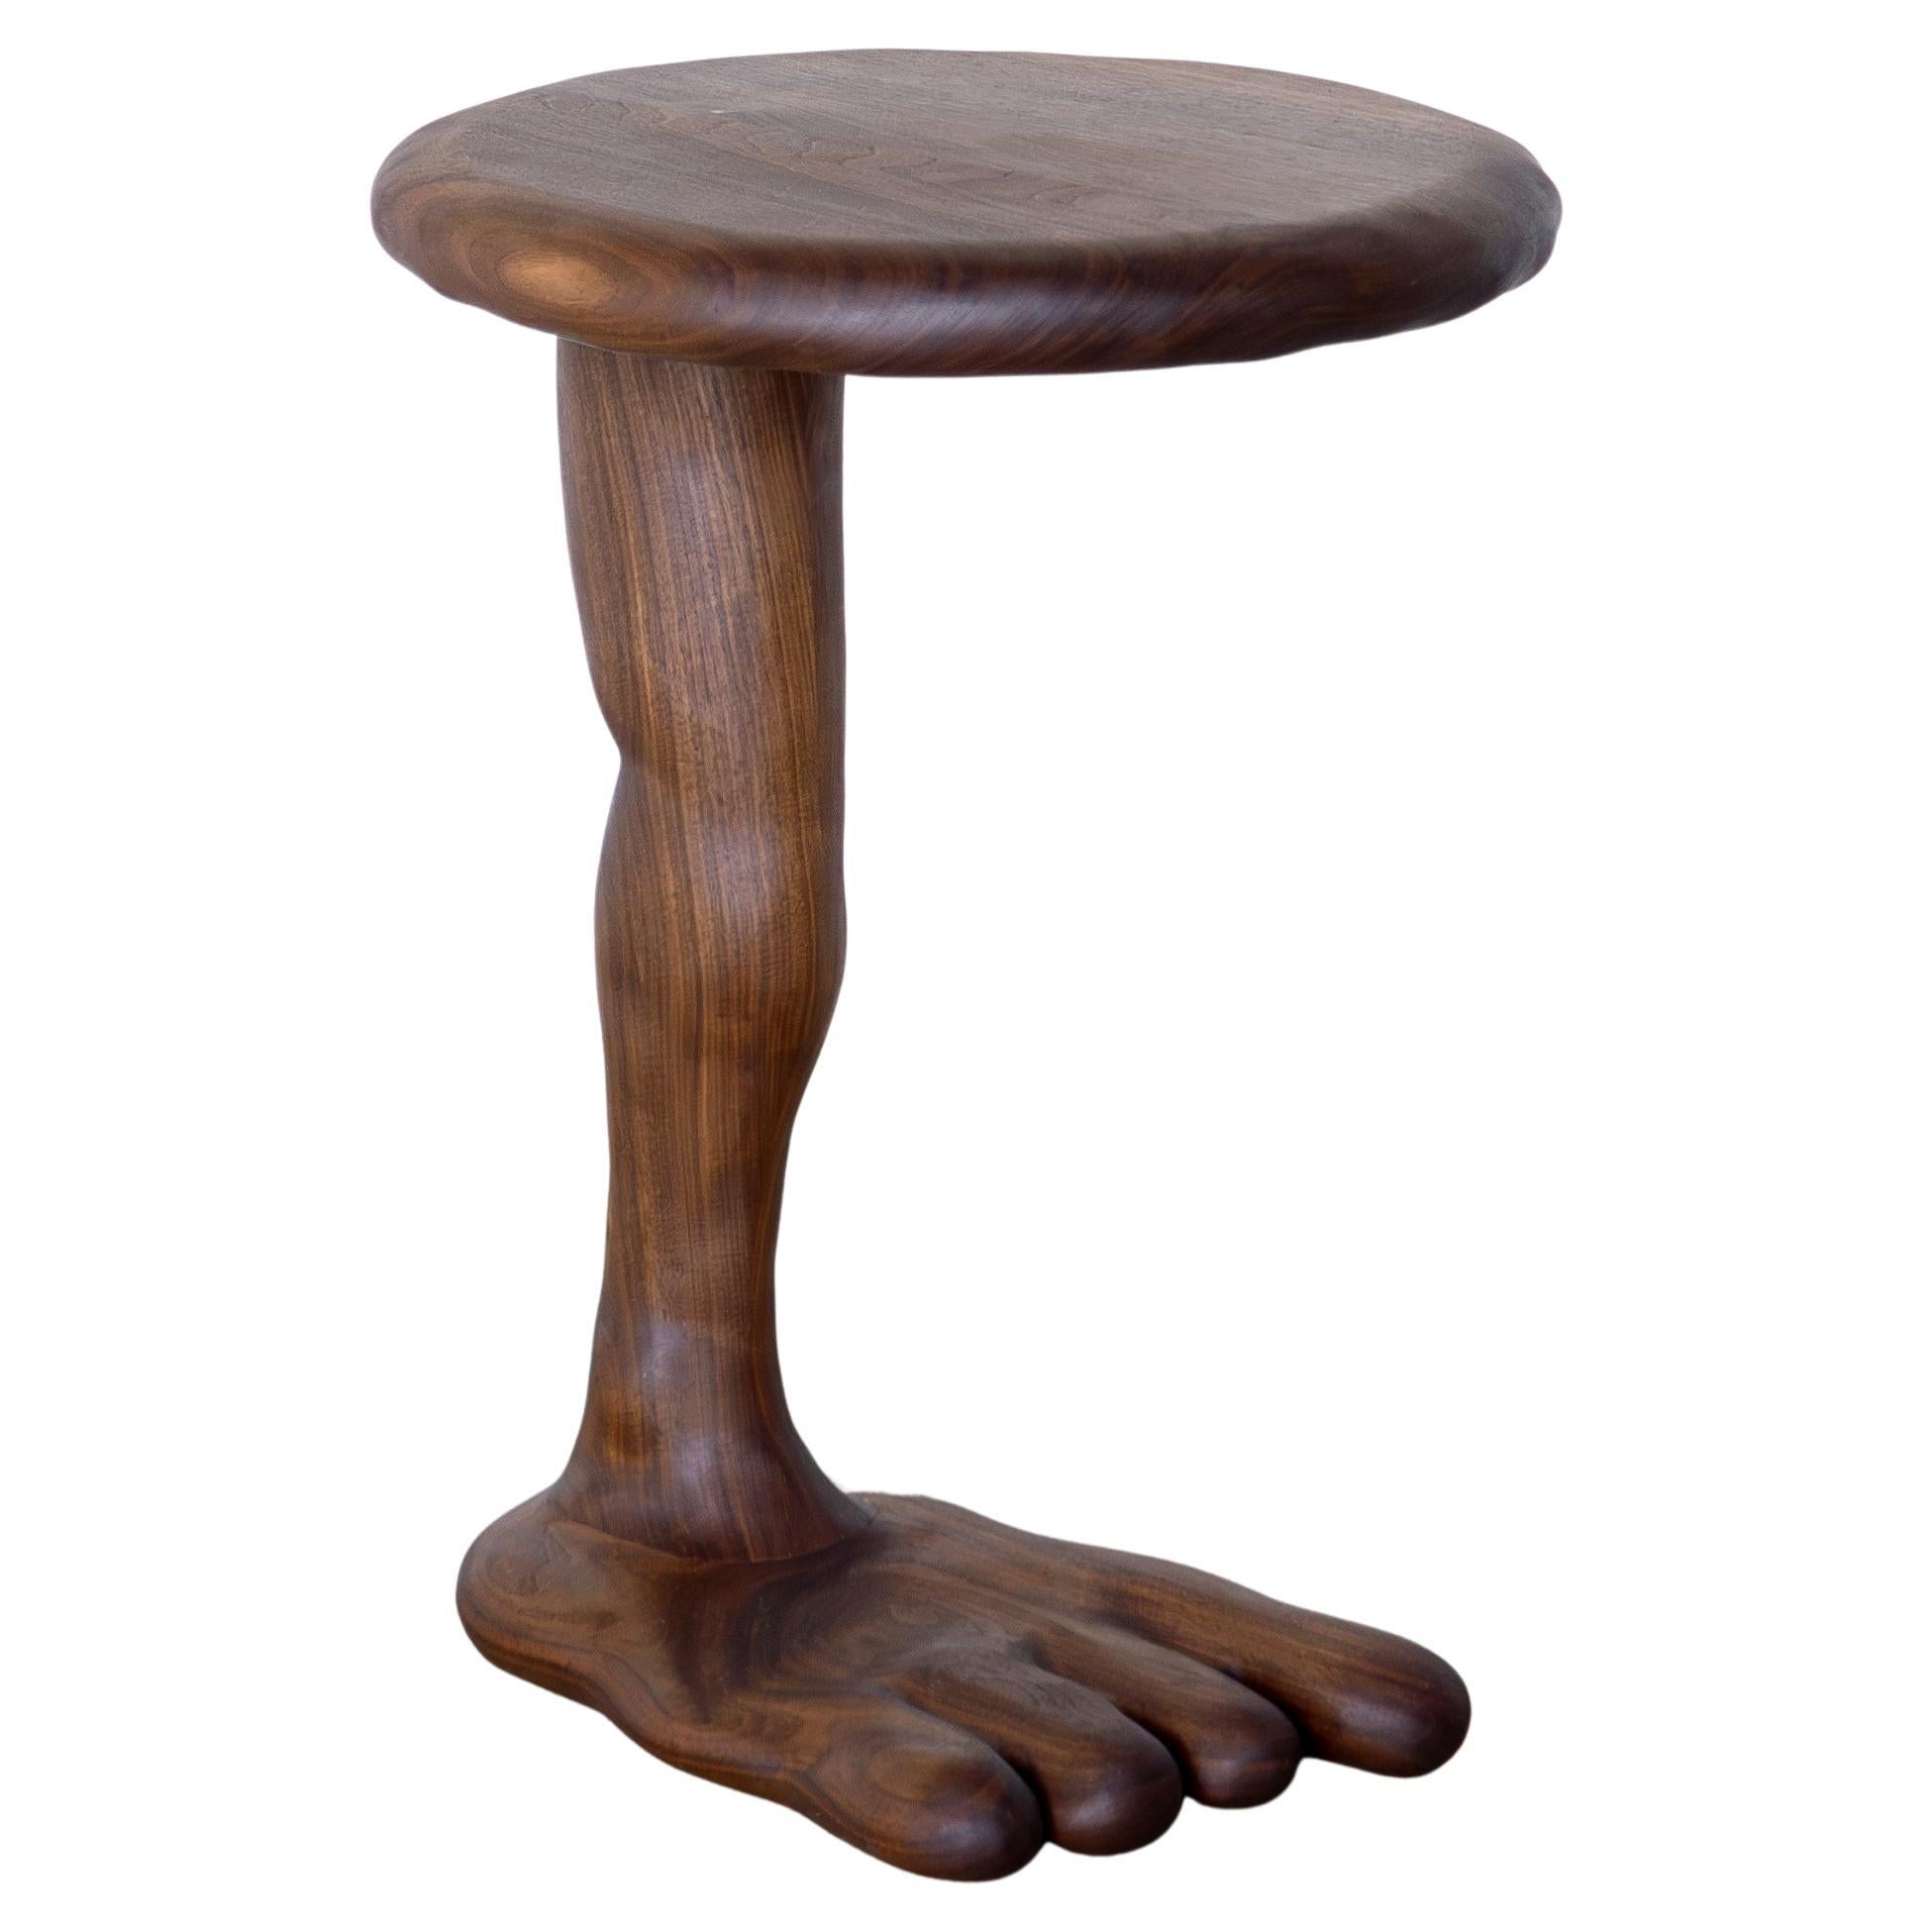 The Leg Side Table - Table sculpturale en Wood Wood Walnut